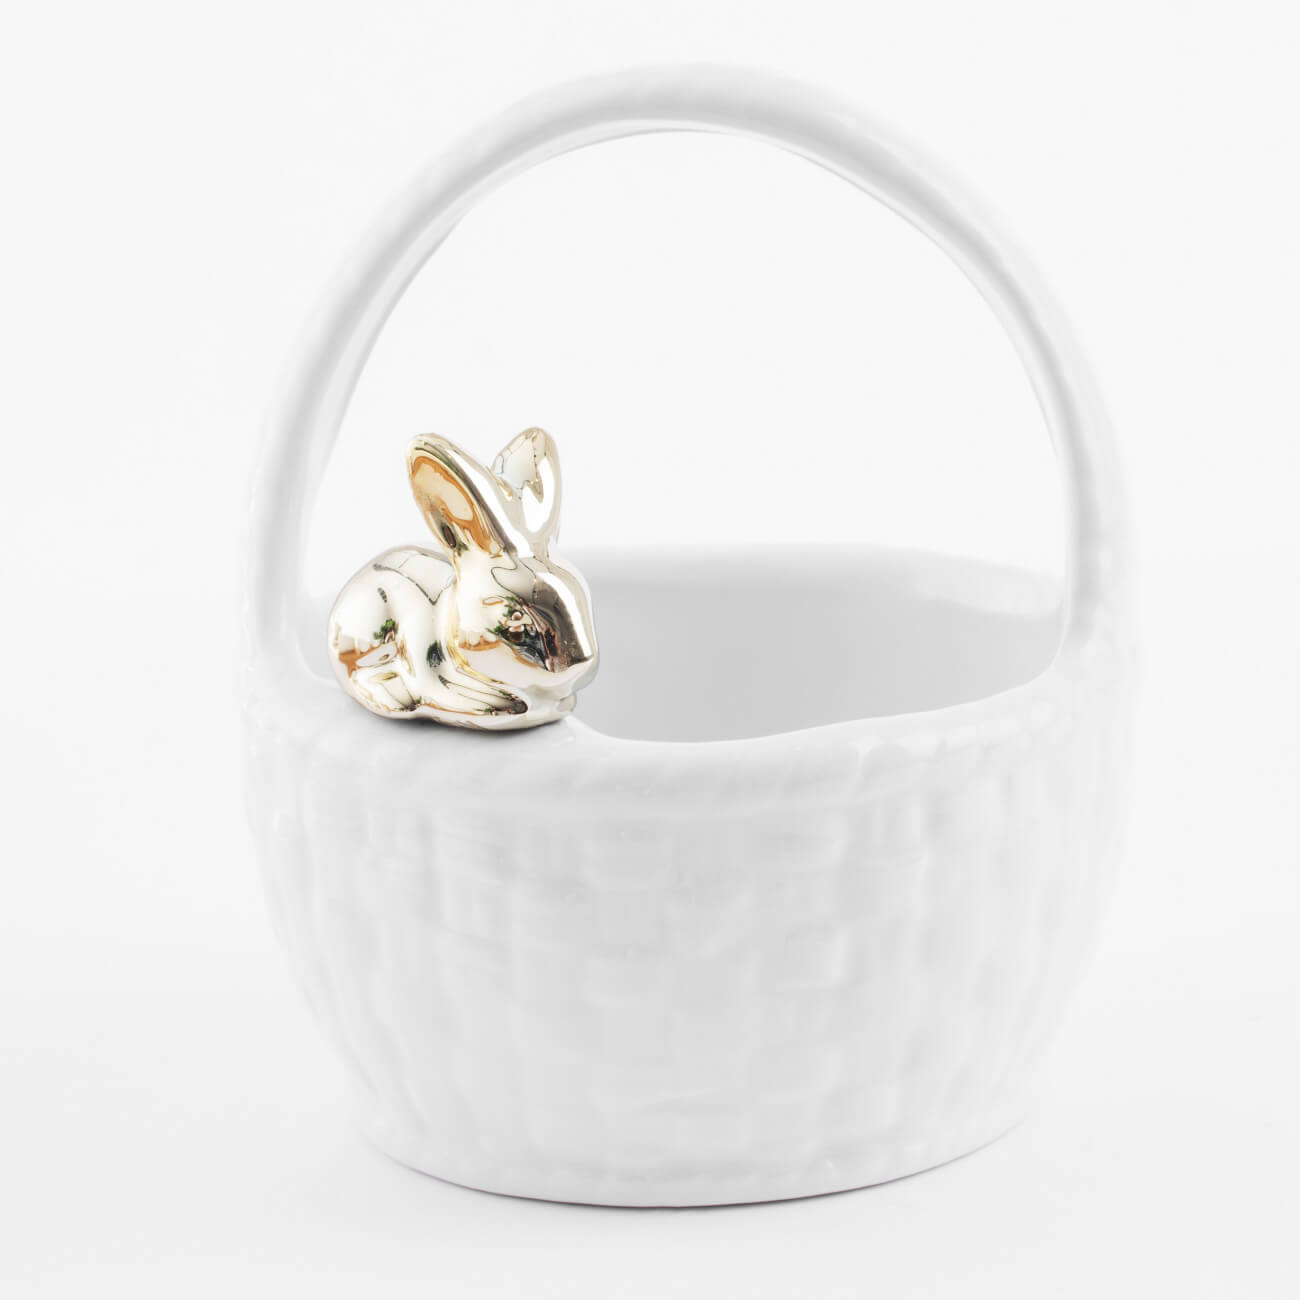 конфетница 12х14 см с ручкой керамика белая кролик на корзине easter gold Конфетница, 12х14 см, с ручкой, керамика, белая, Кролик на корзине, Easter gold